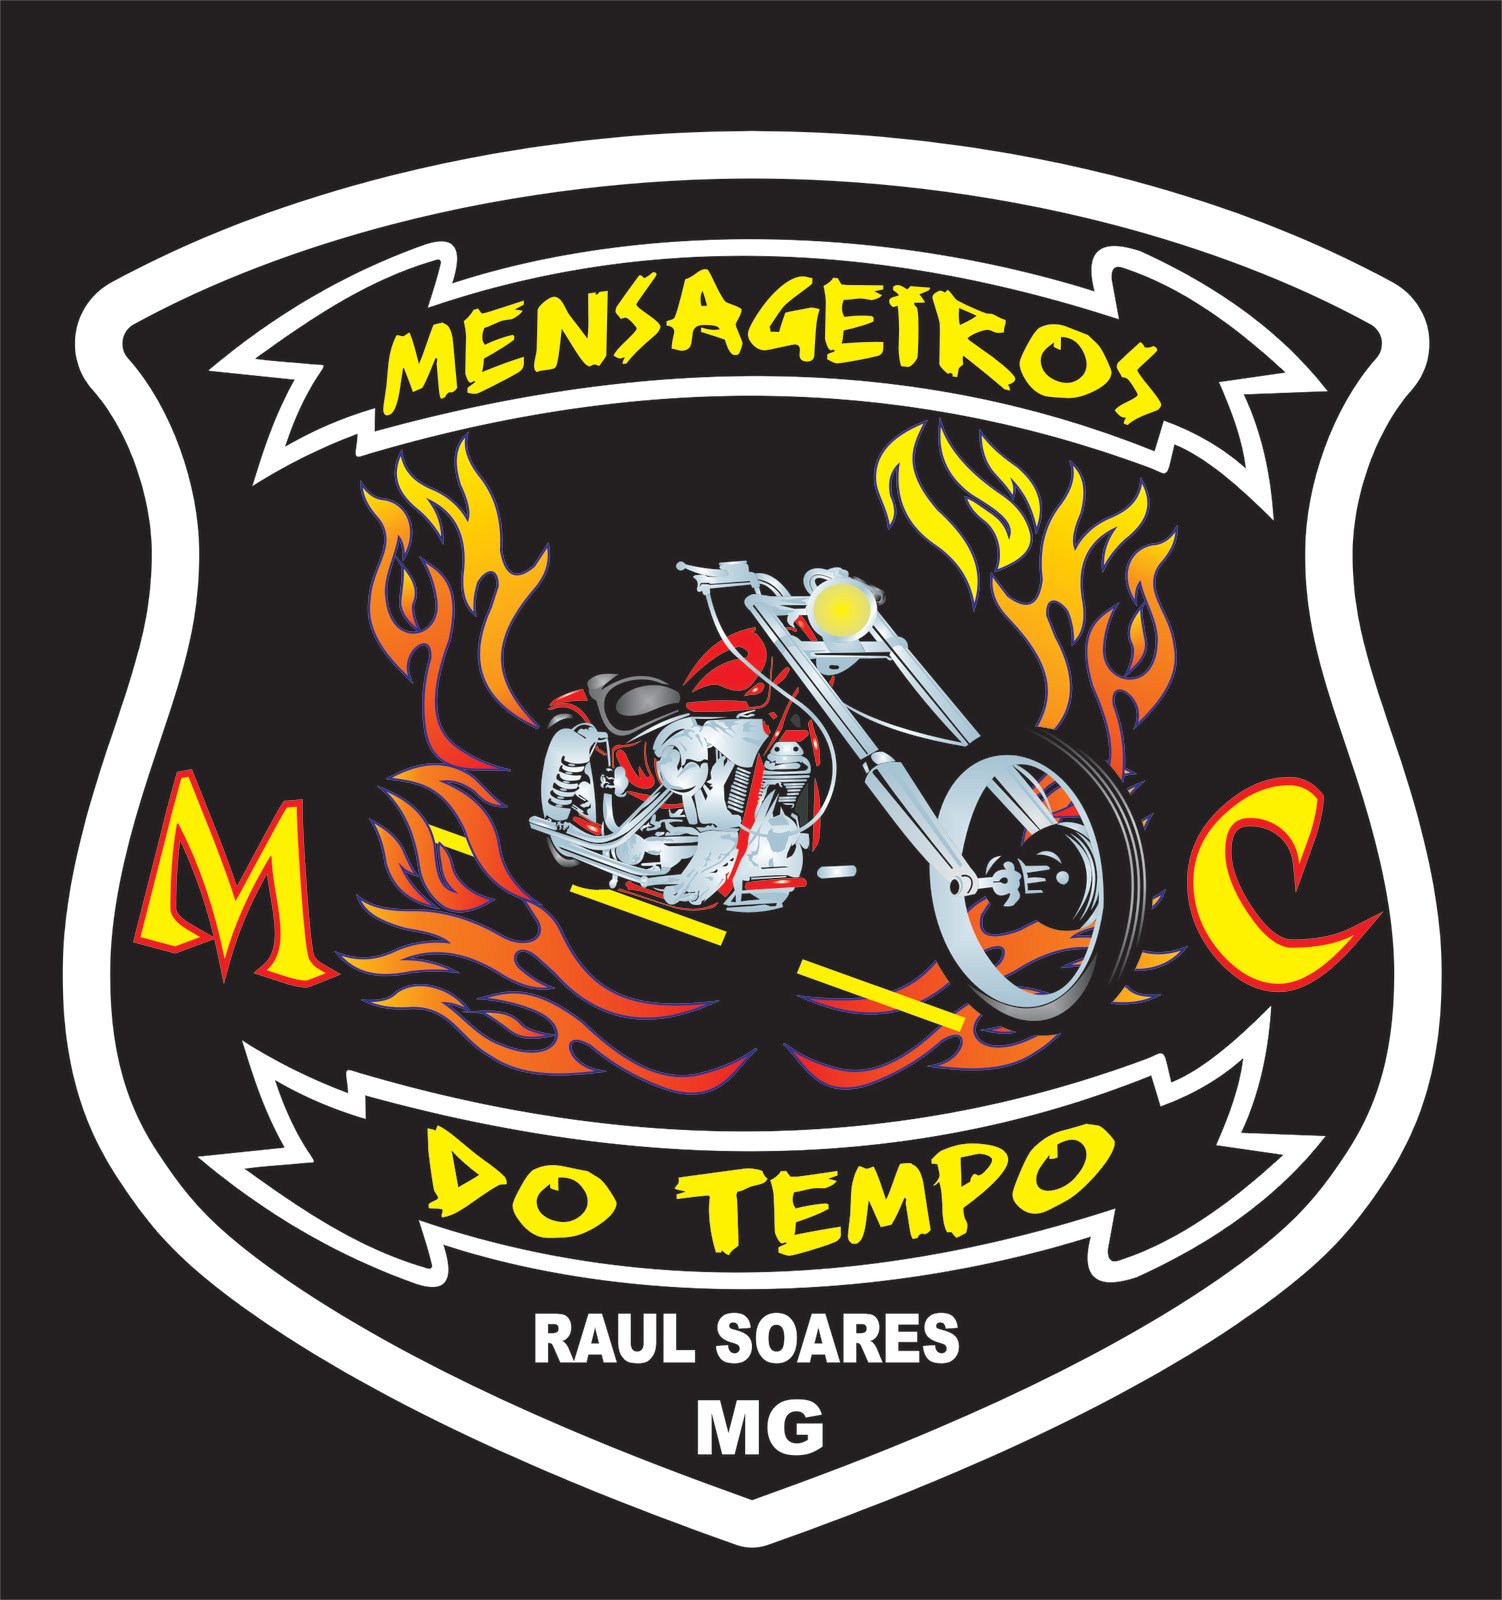 Mensageiros do Tempo Moto clube